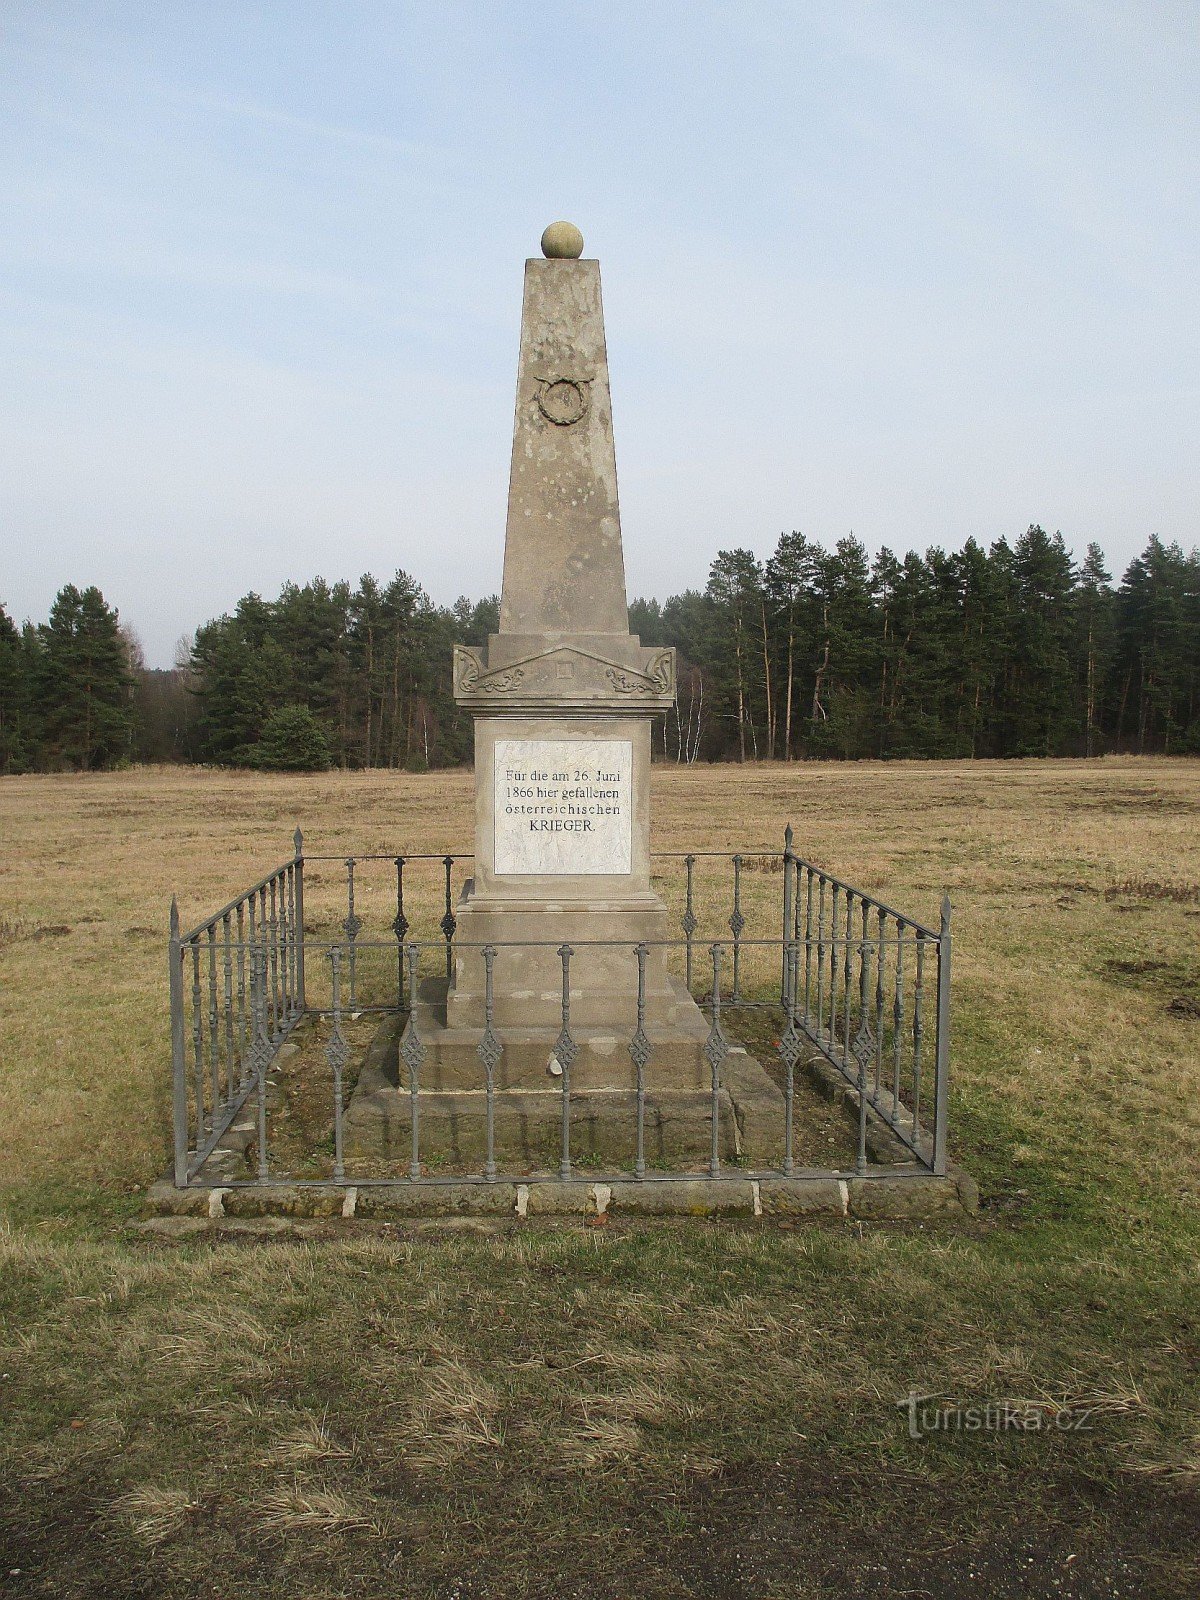 Đài tưởng niệm Trận chiến Kuřívod